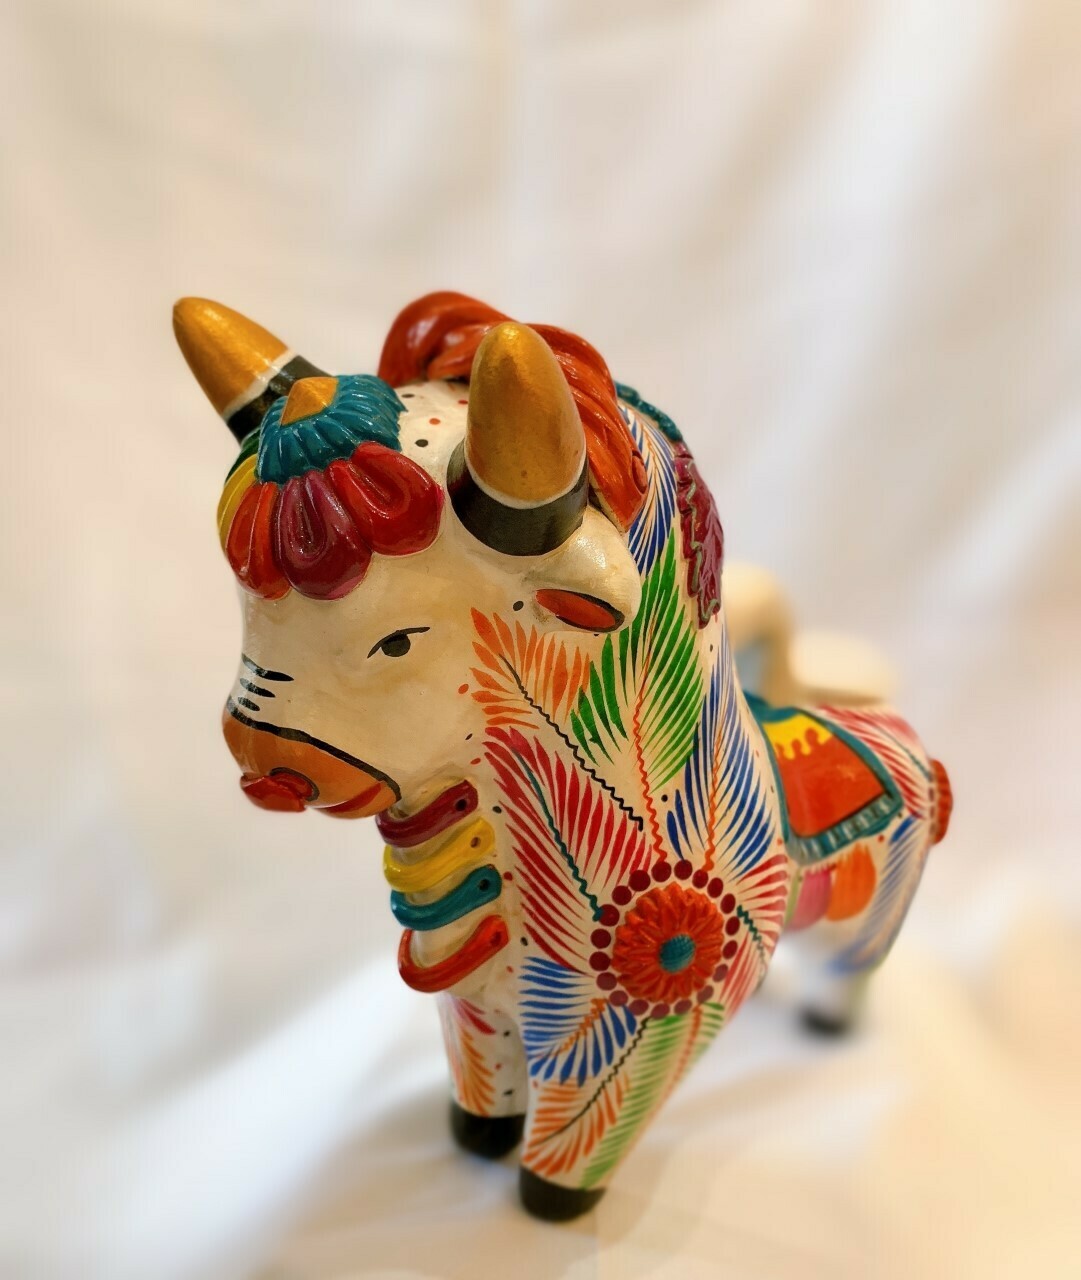 White Painted Ceramic Bull Folk Pucara Art Figurine Made in Peru 8.5"